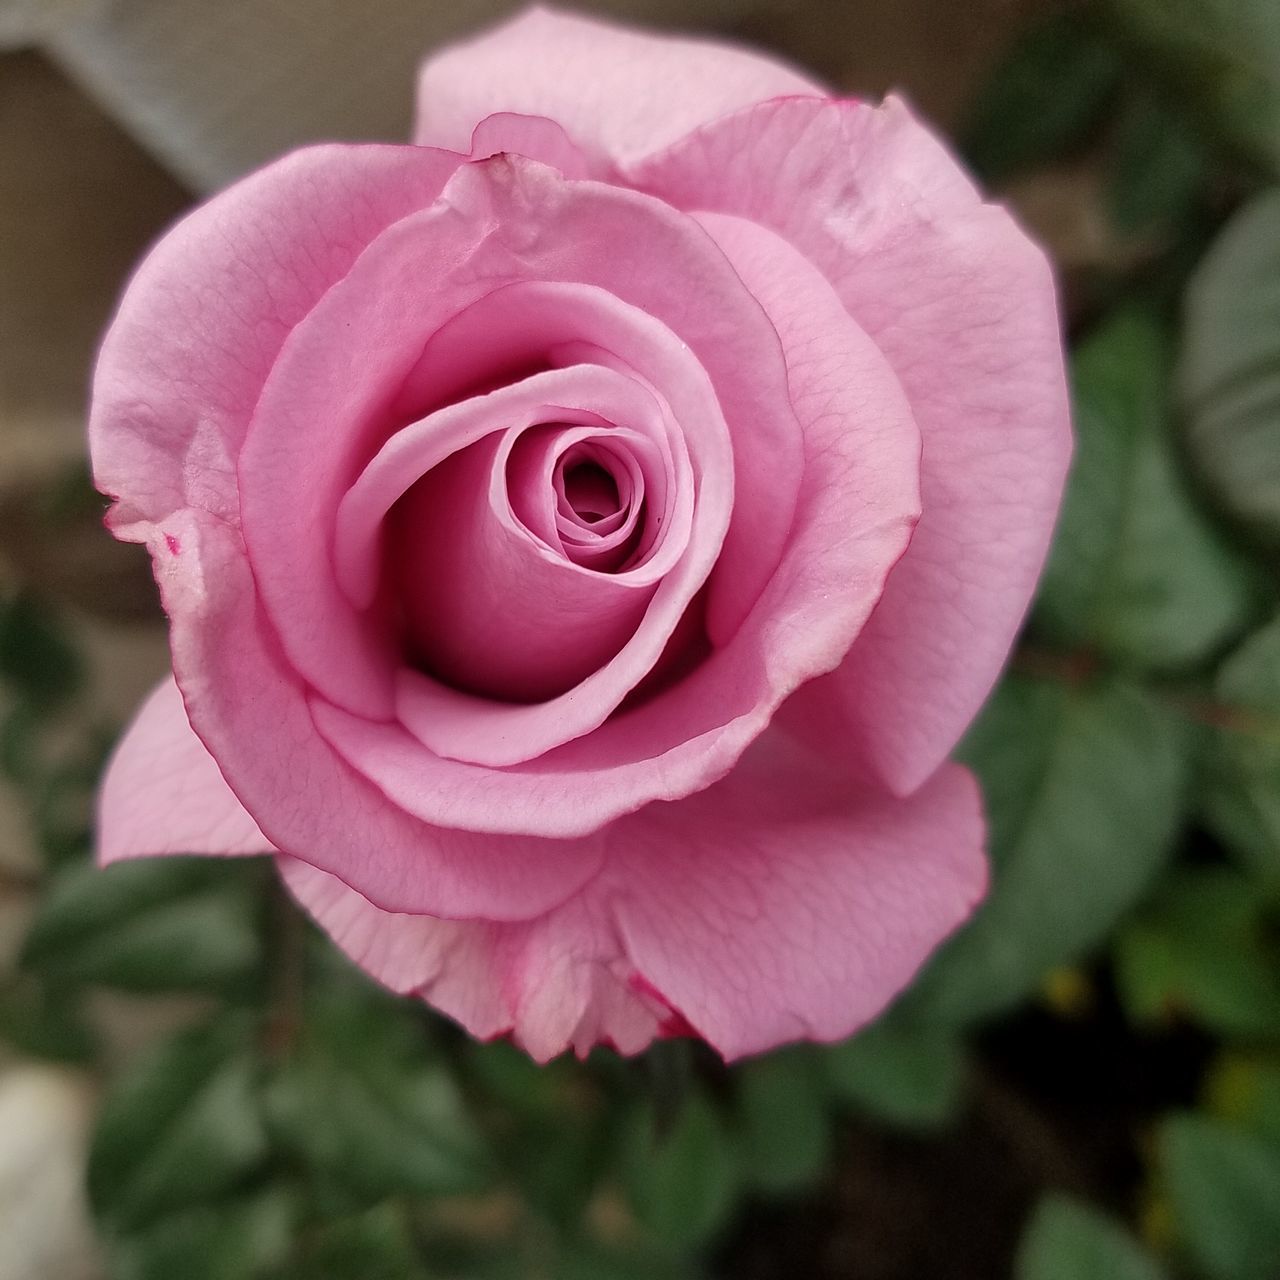 Large pink rose bloom